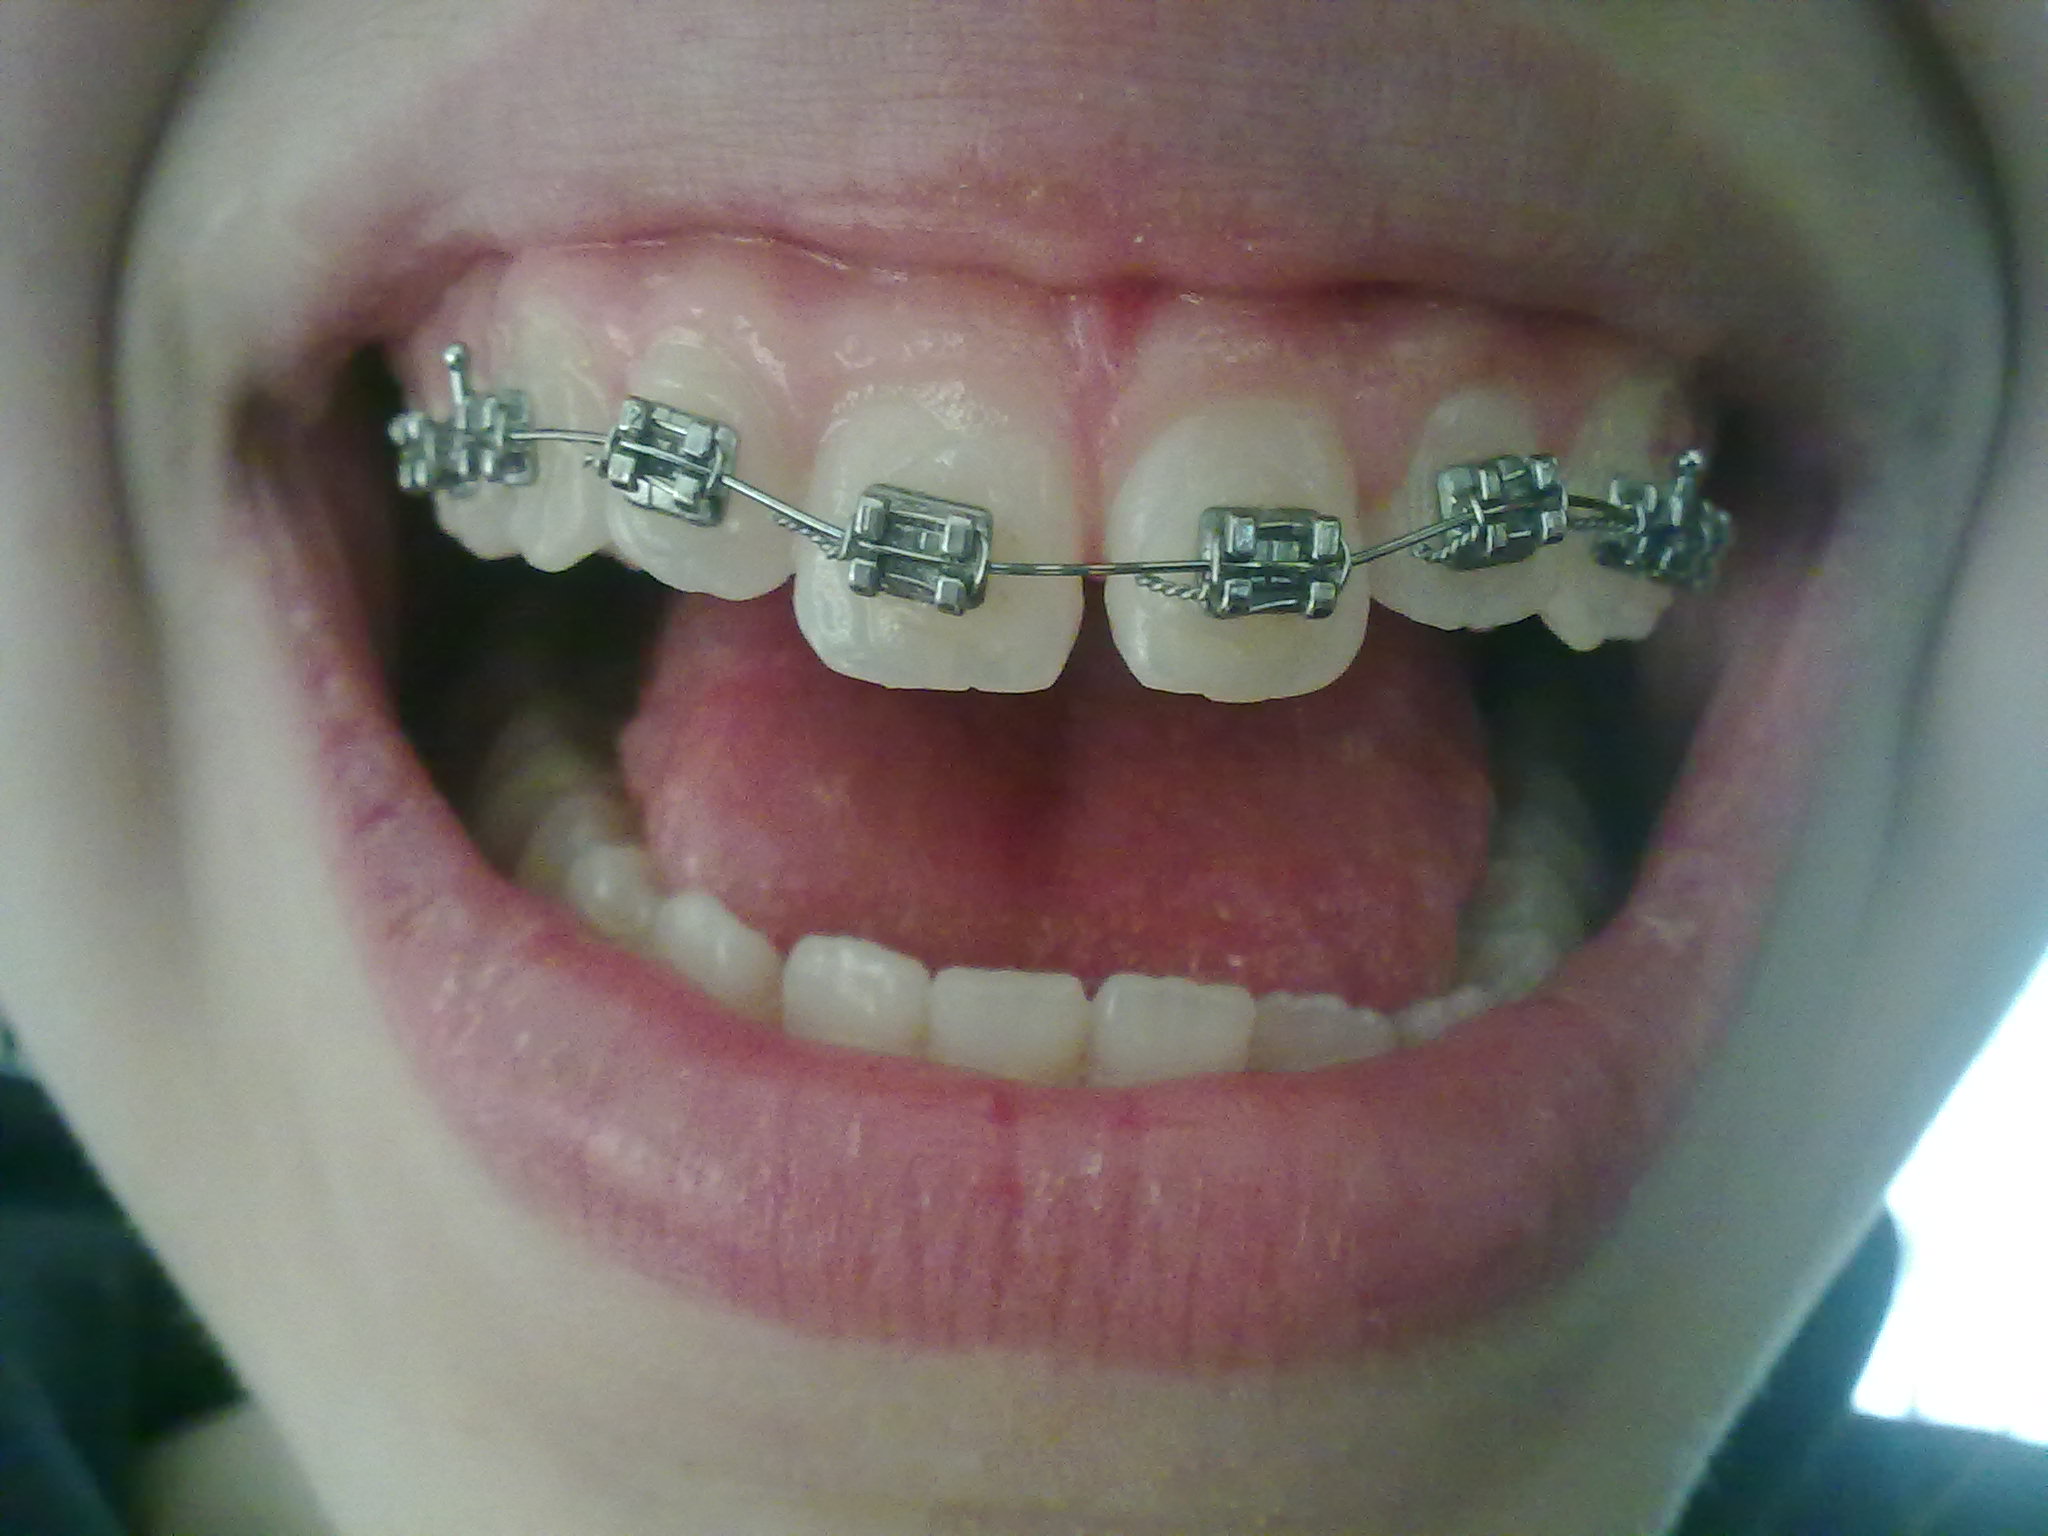 Da circa quattro mesi ho messo l'apparecchio fisso all'arcata superiore dei denti per un problema estetico.